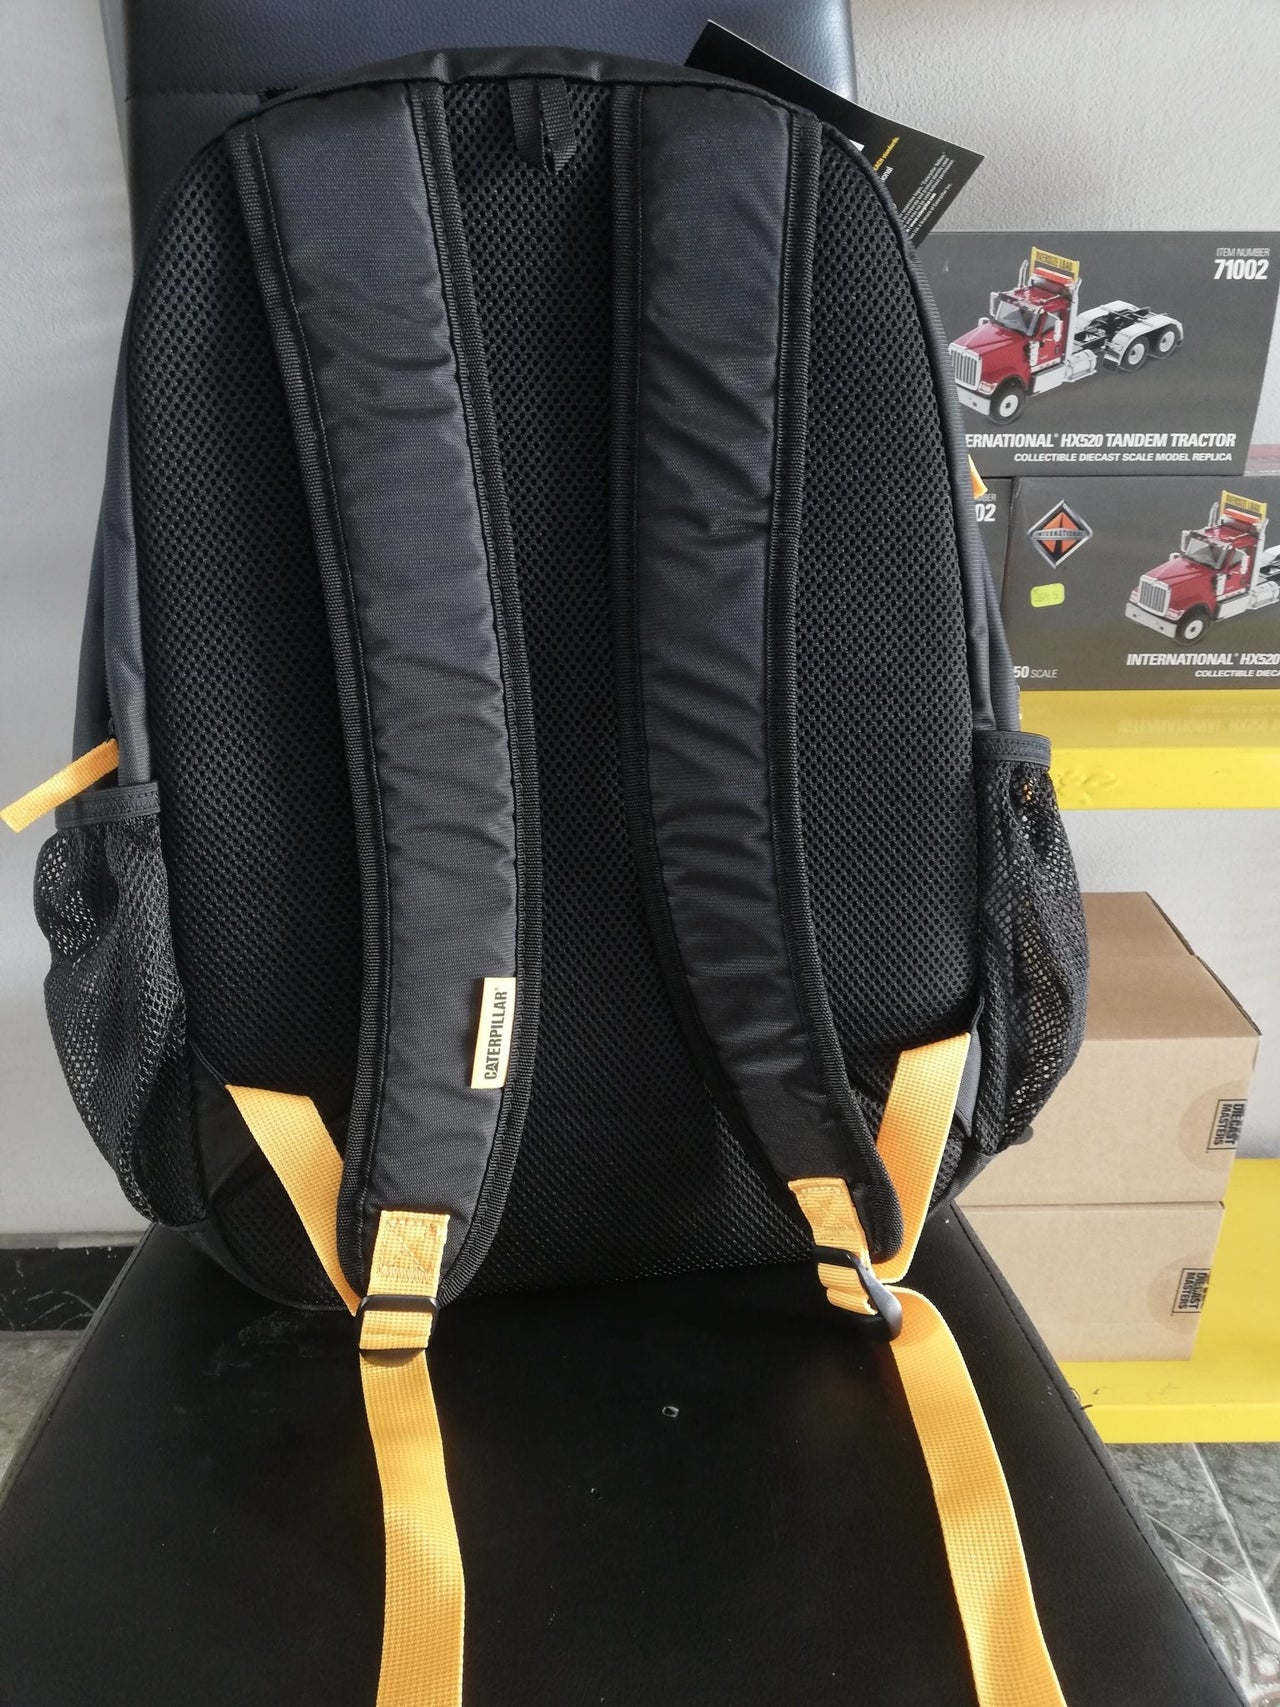 83854-01 Cat BTS Highway Black Backpack